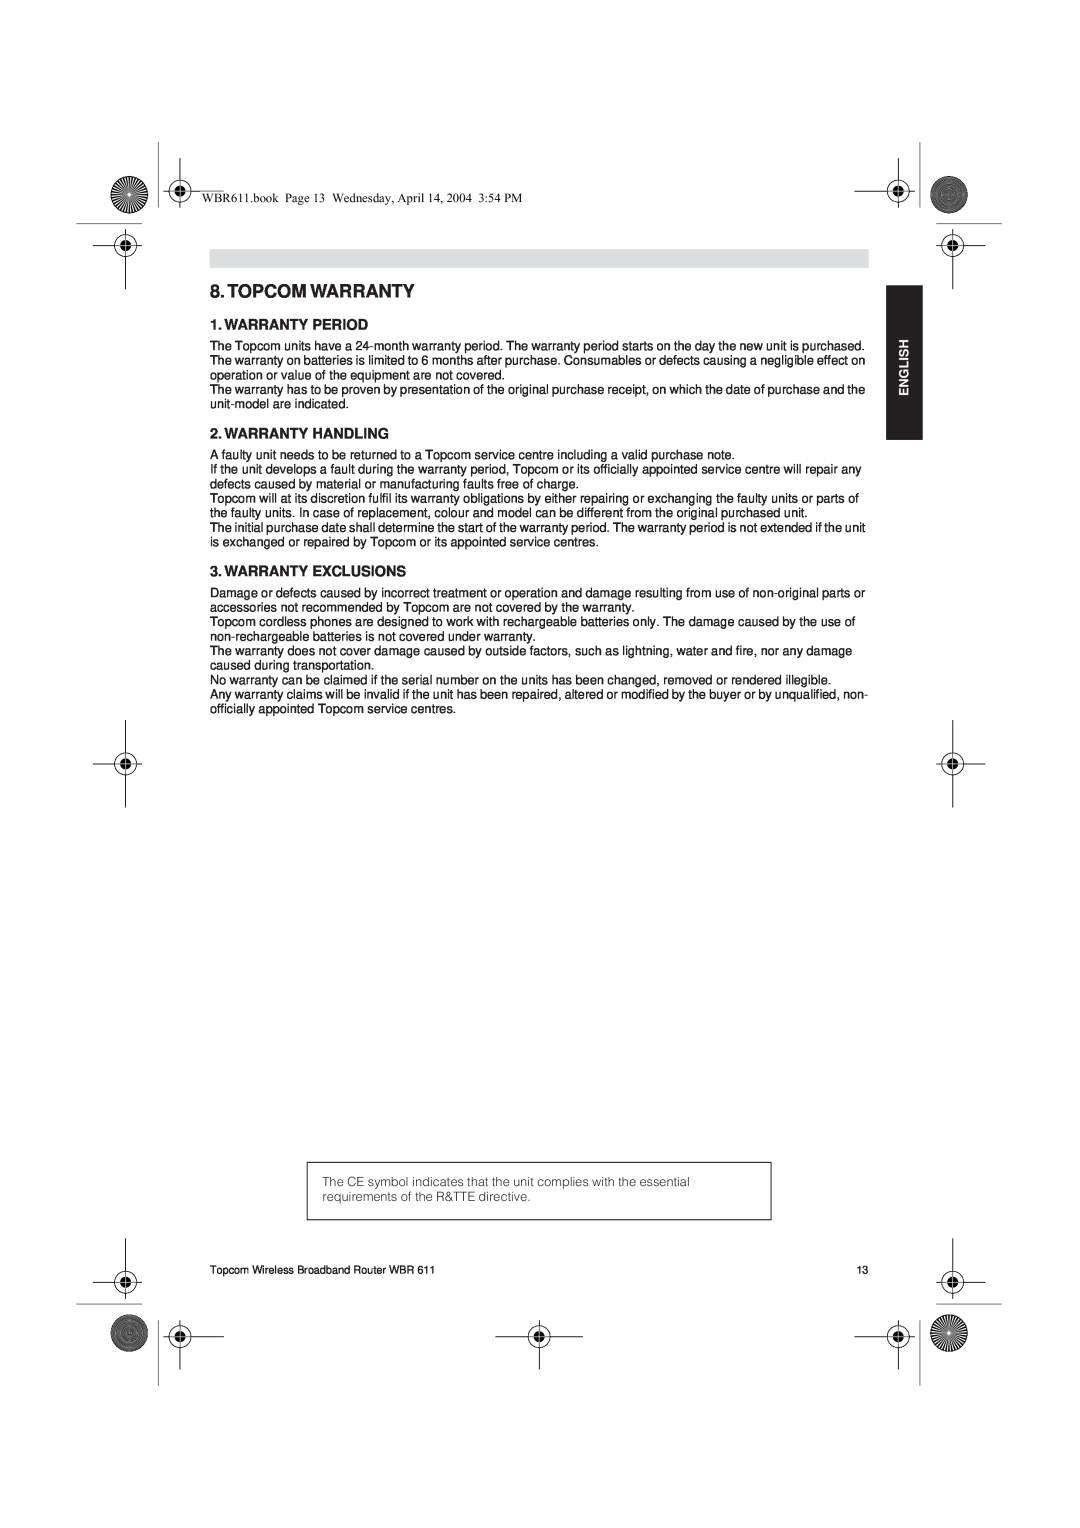 Topcom WBR 611 manual do utilizador Topcom Warranty, Warranty Period, Warranty Handling, Warranty Exclusions, English 